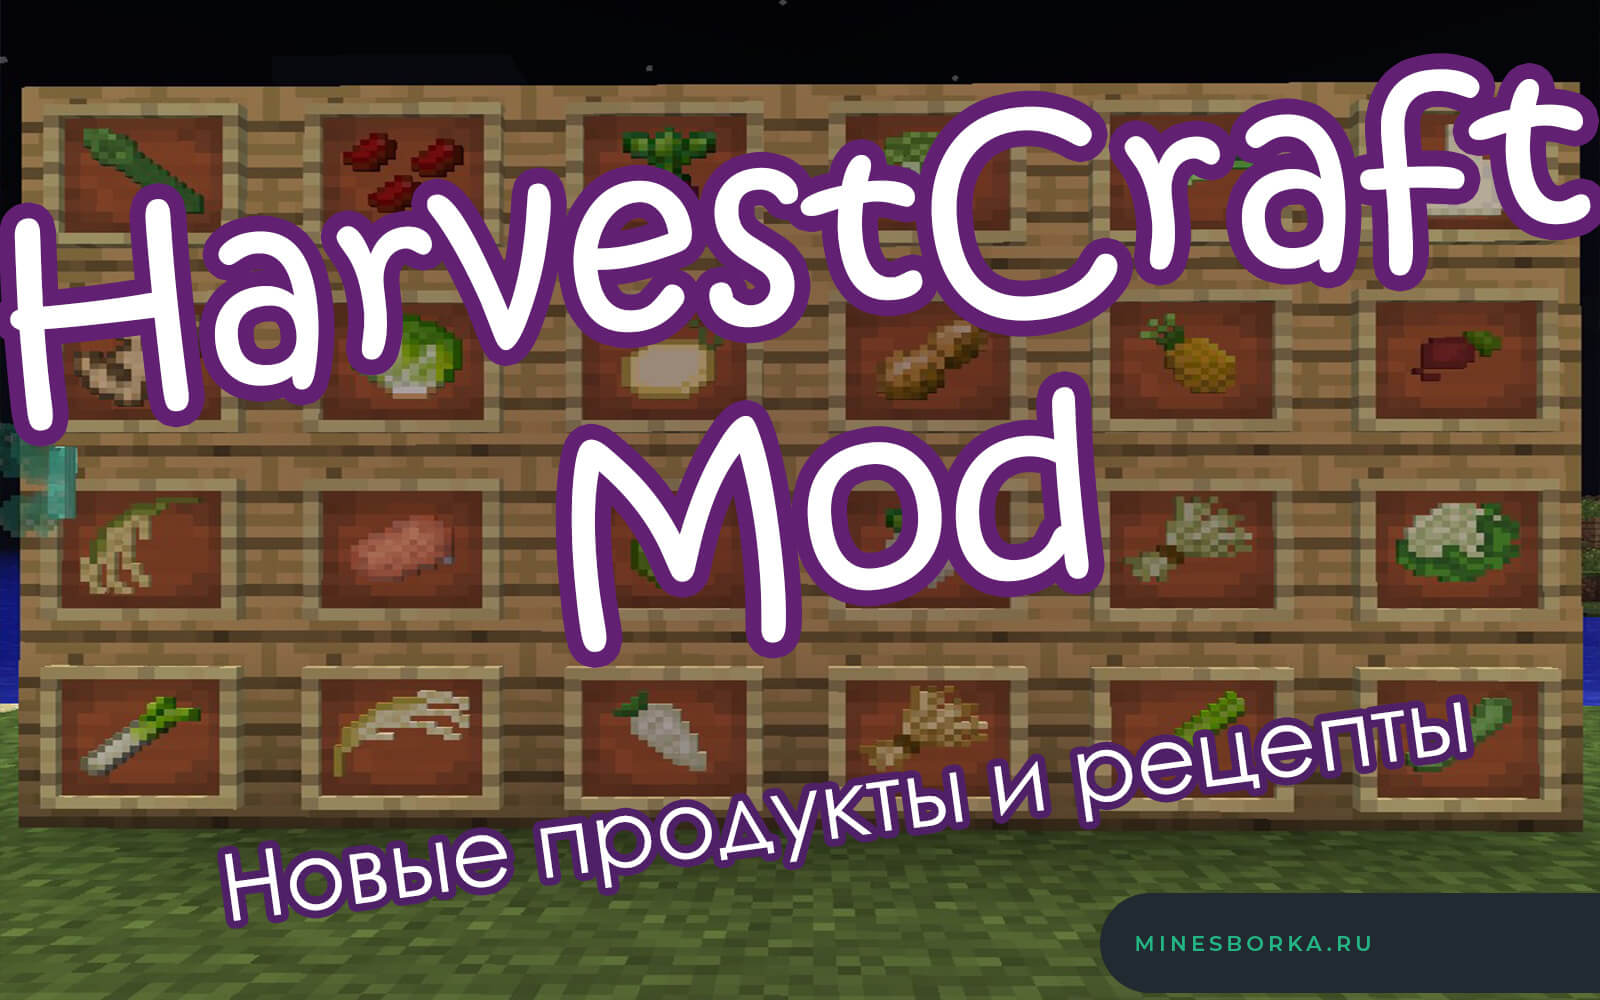 Скачать мод HarvestCraft Mod для майнкрафт | Новые продукты и рецепты 1.12.2